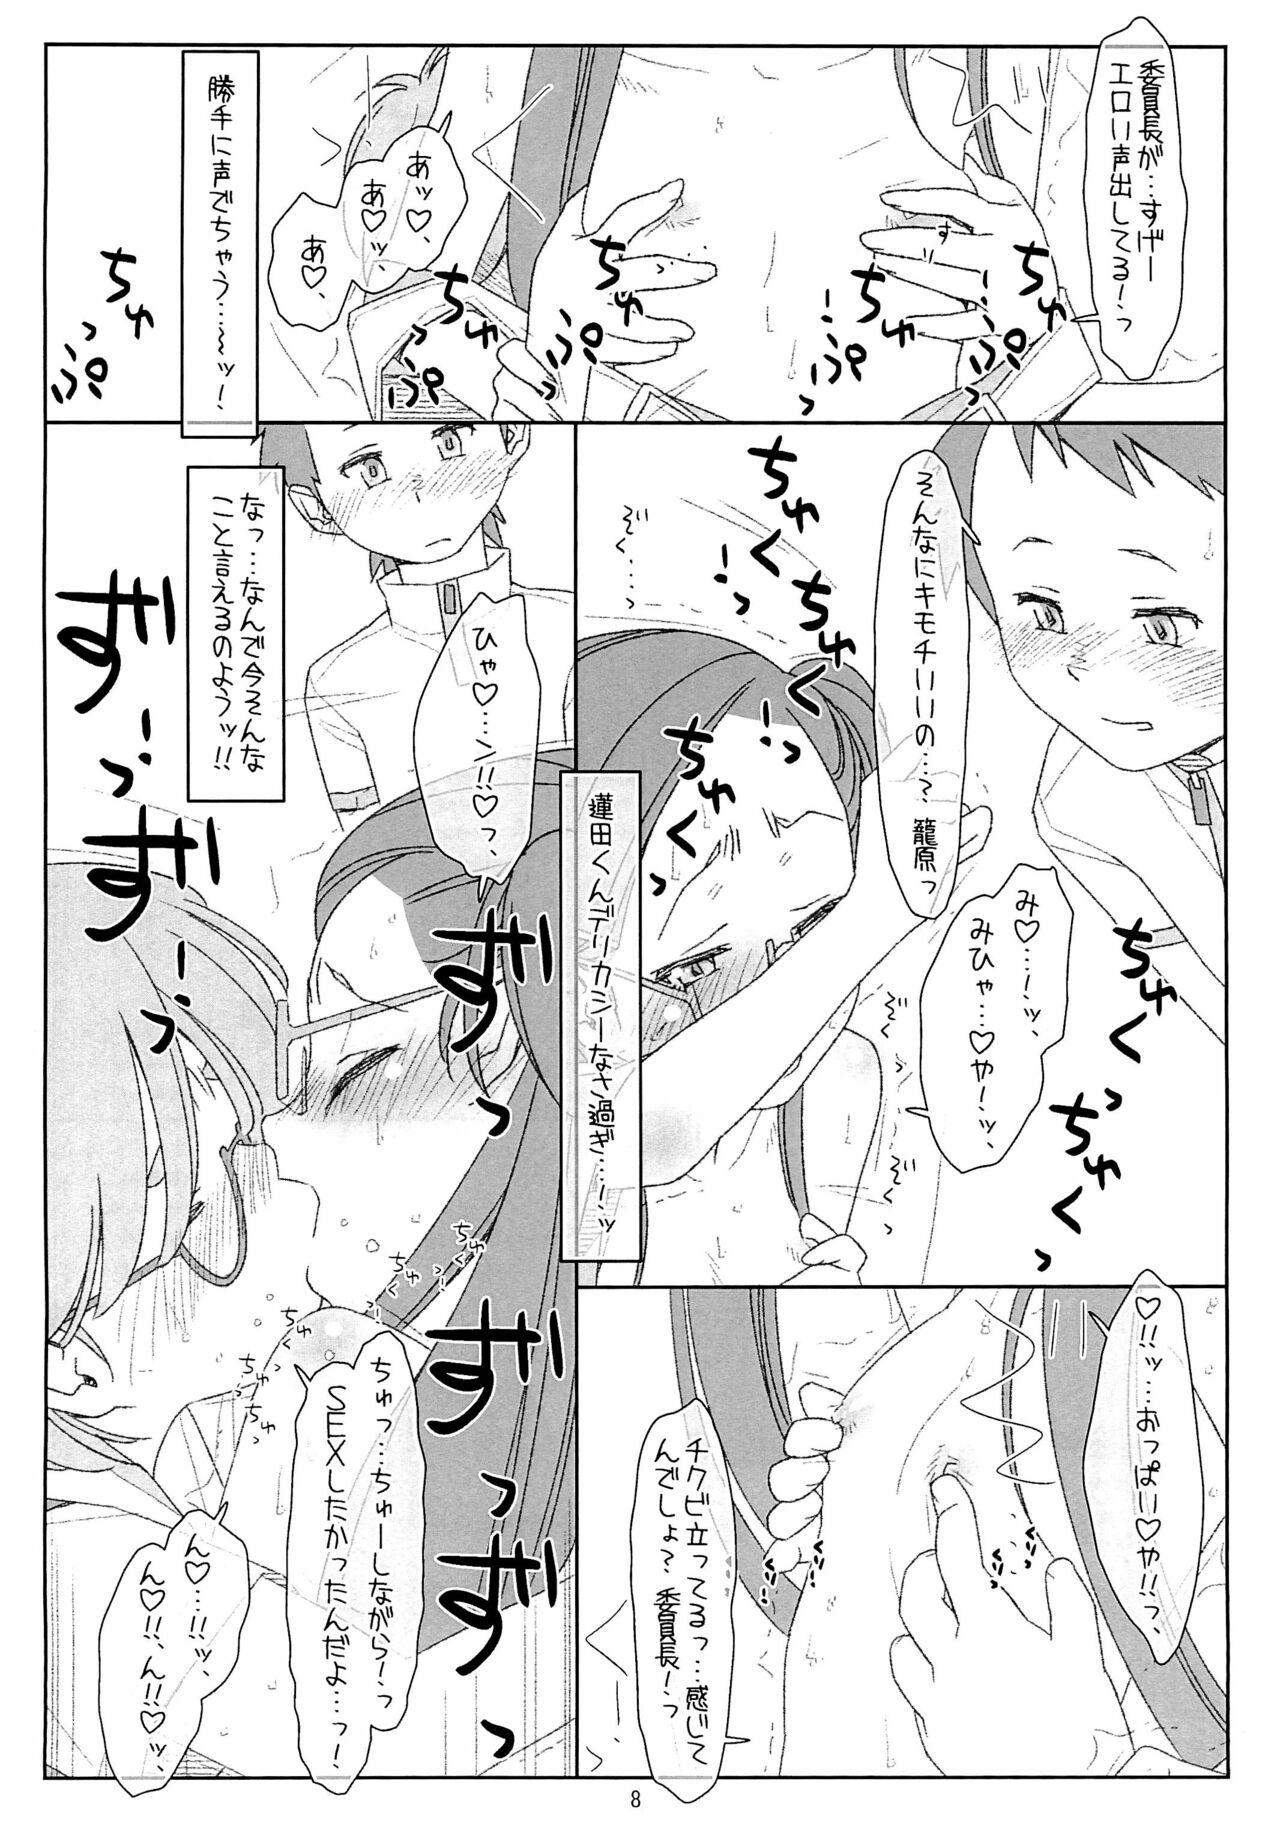 Club "Bokutachi no Super App" 4 preview ver.2 - Original Desi - Page 8